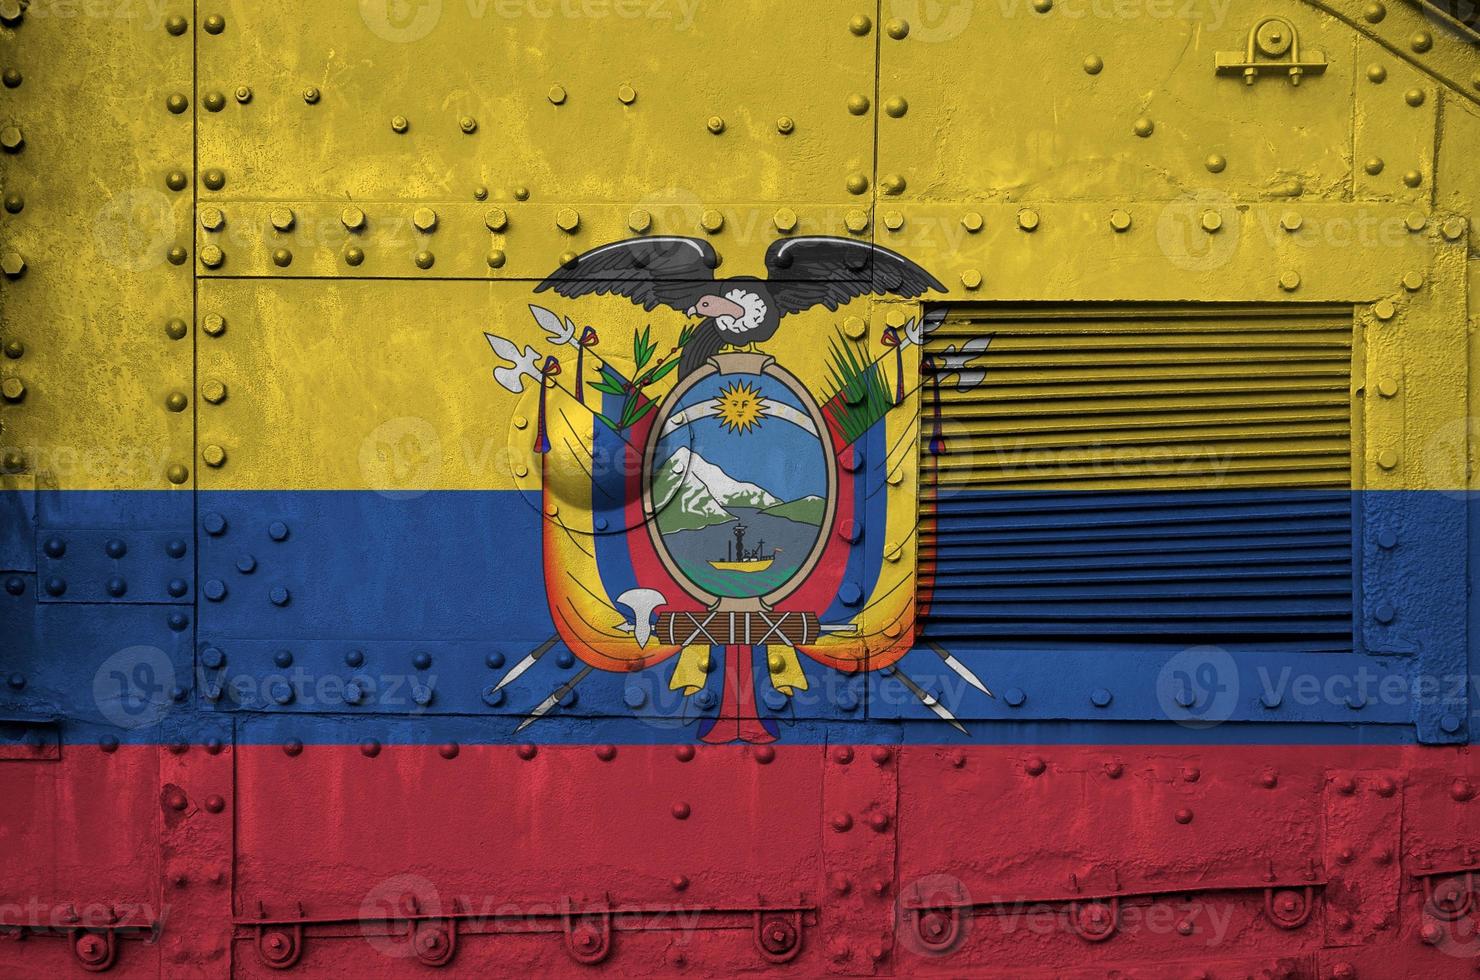 bandeira do equador retratada na parte lateral do tanque blindado militar closeup. fundo conceitual das forças do exército foto